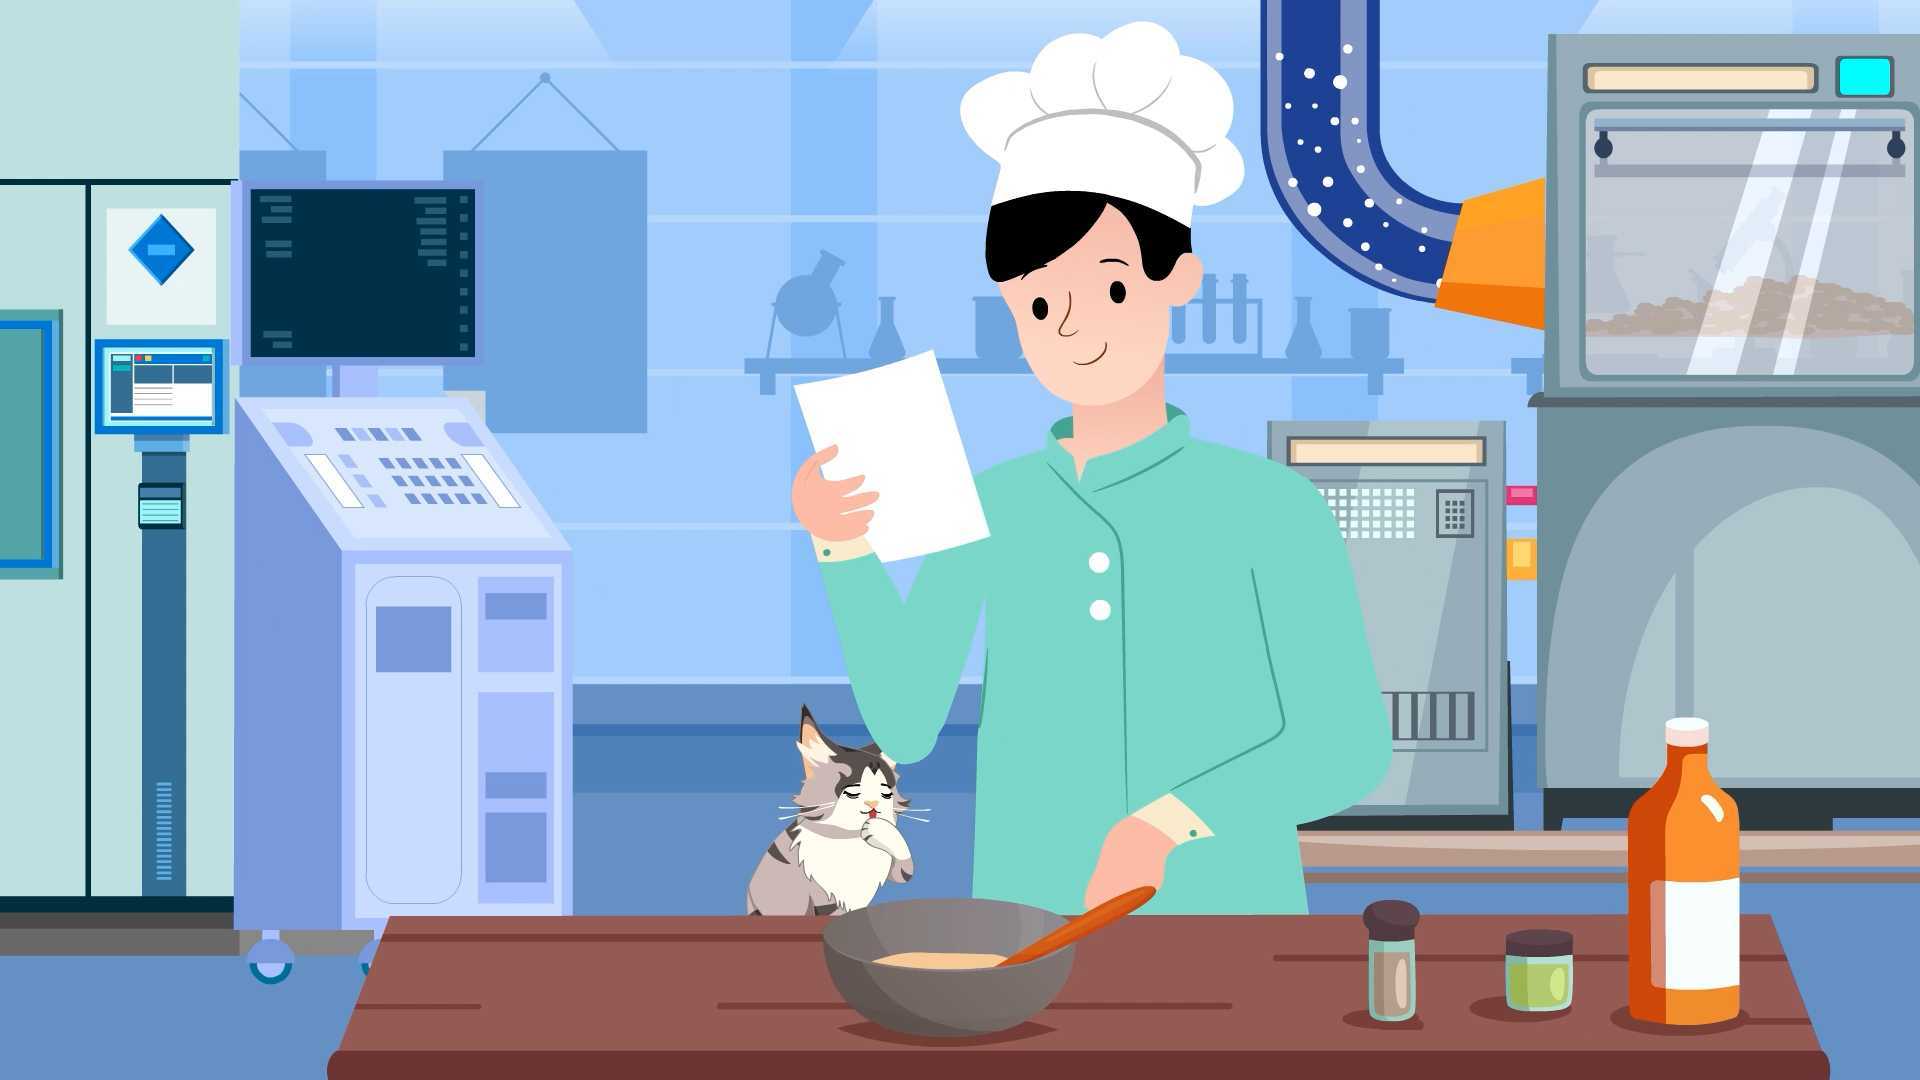 三段式轻度烘焙工艺|猫粮|产品宣传|手绘场景